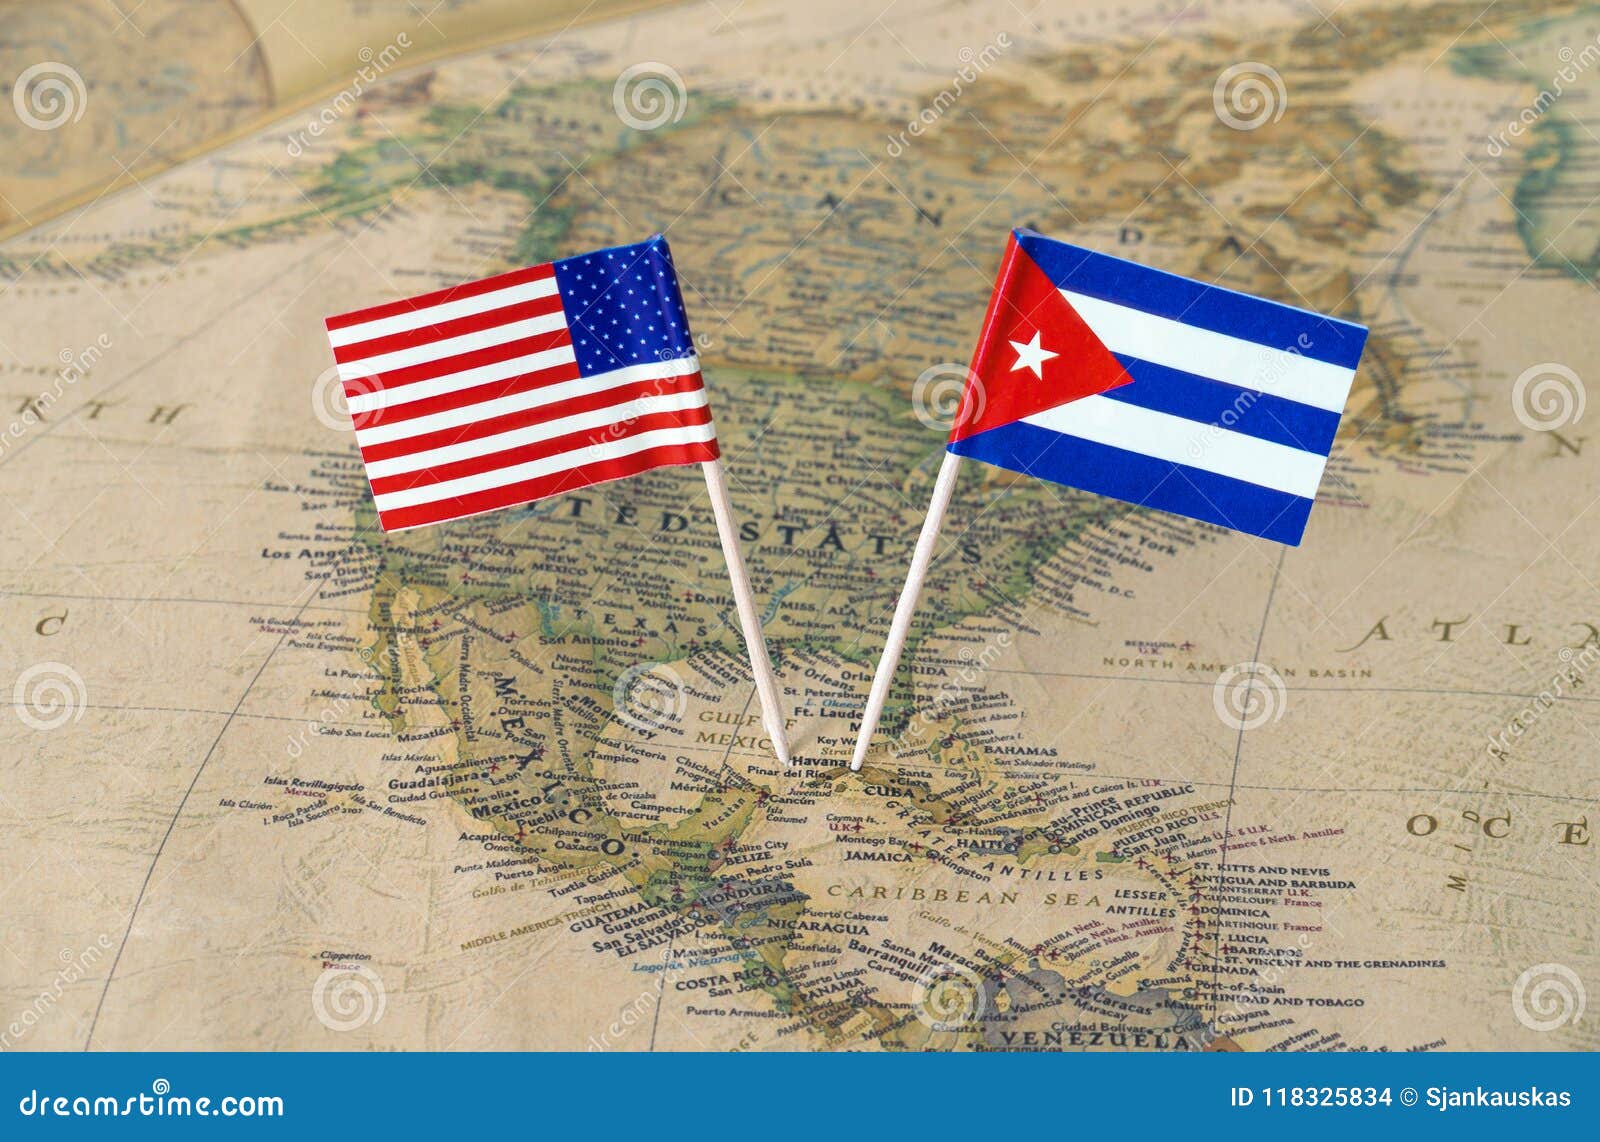 Les Etats-Unis d'Amérique et le Cuba marquent des goupilles sur une carte du monde, concept de relations politiques